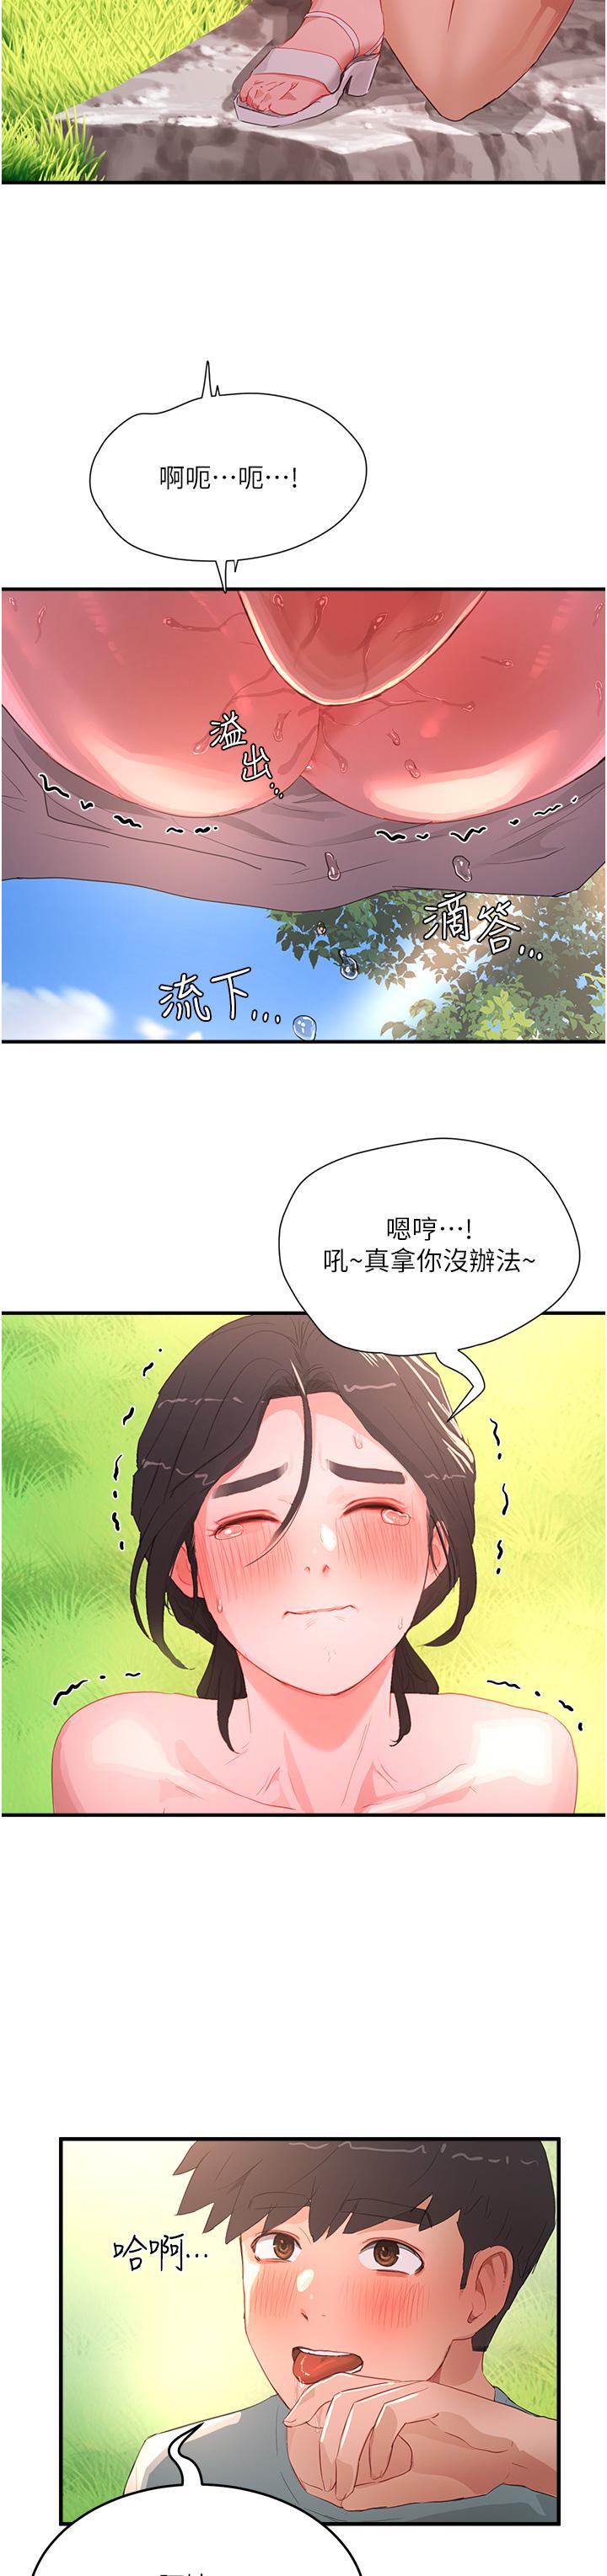 韩国污漫画 夏日深處 第63话 永生难忘的快感 17